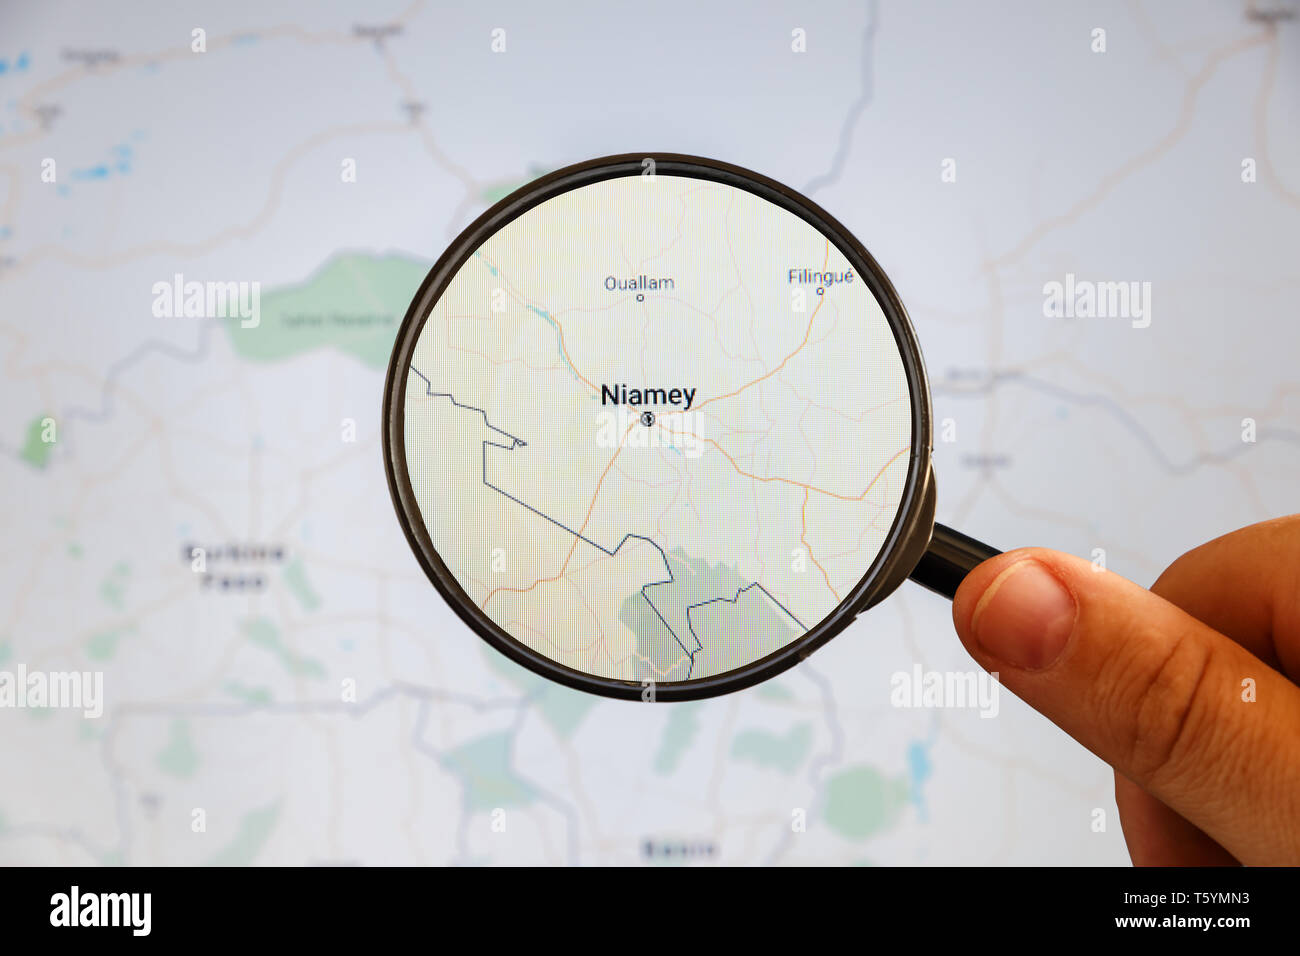 Niamey, Niger. Une carte politique. Concept d'illustration de visualisation de la ville sur l'écran grâce à une loupe dans la main. Banque D'Images